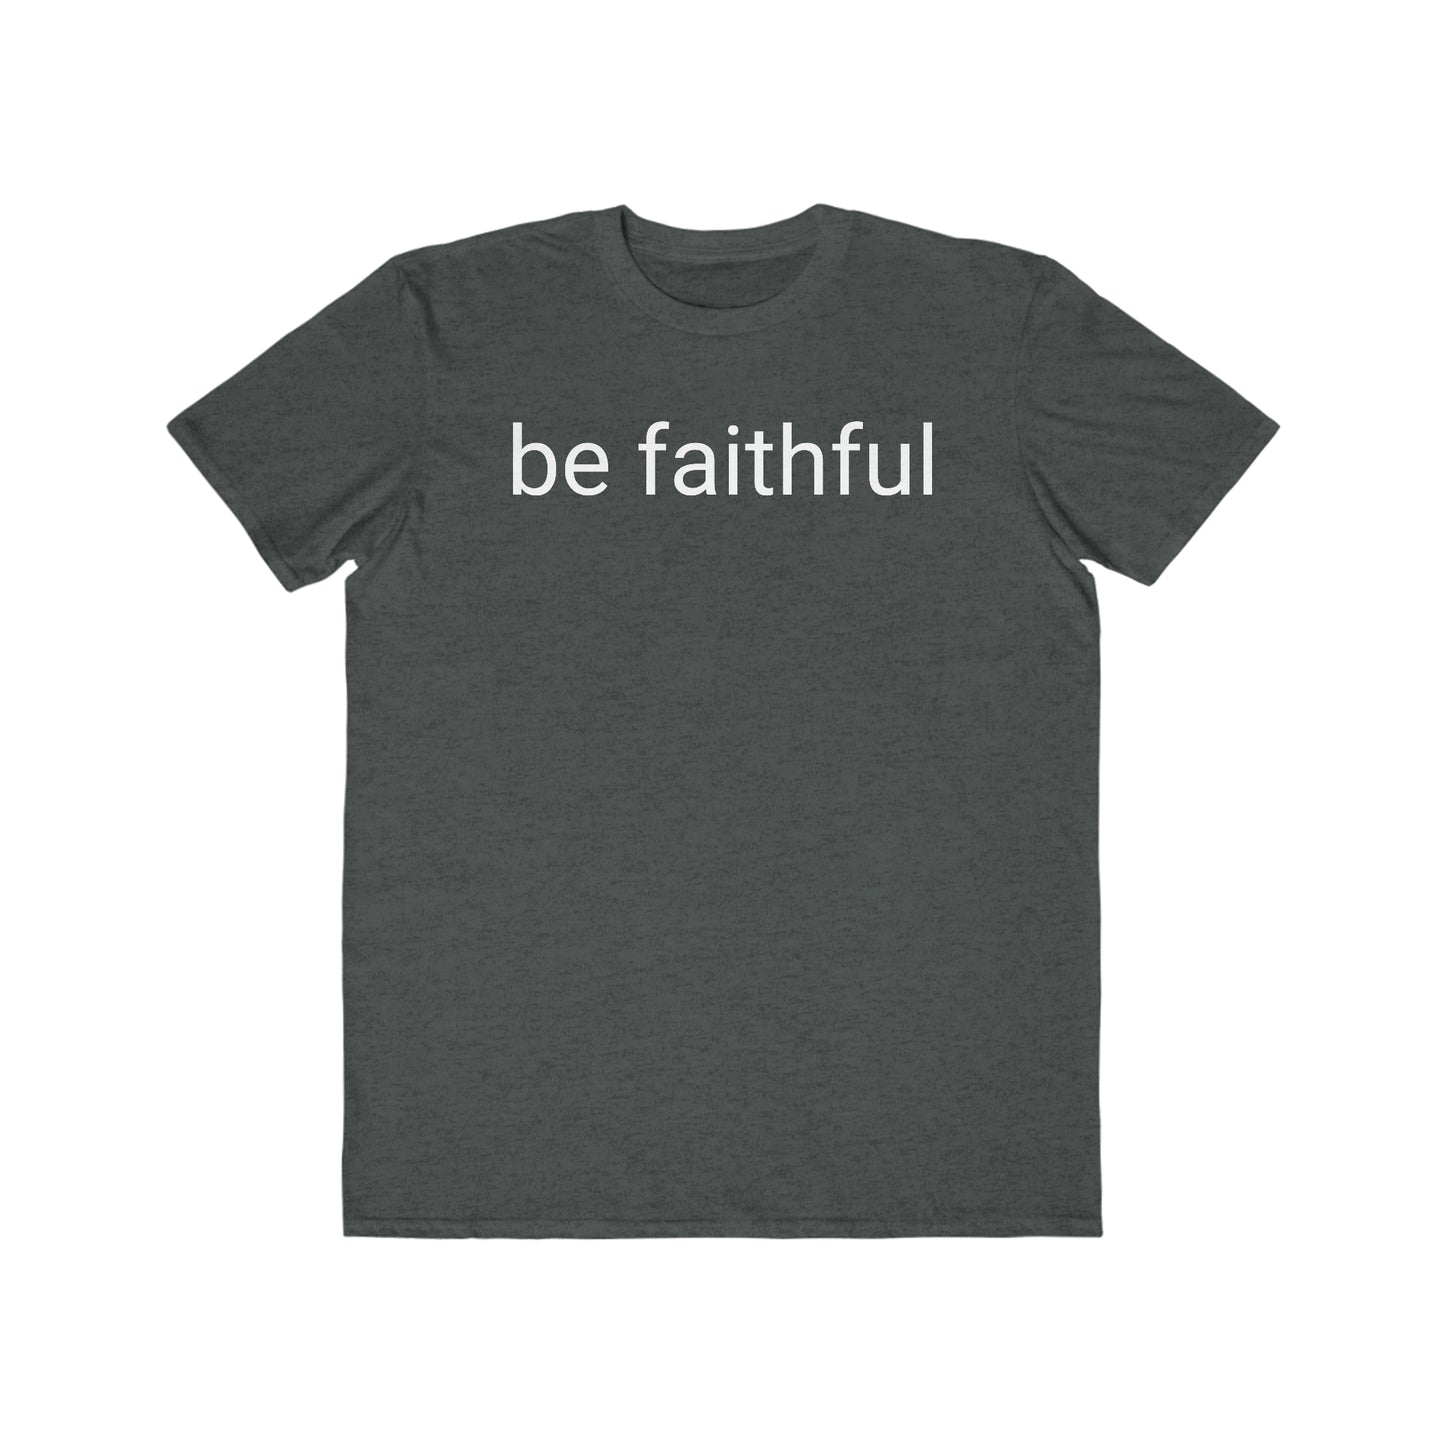 Be Faithful - Men's Lightweight Fashion Tee